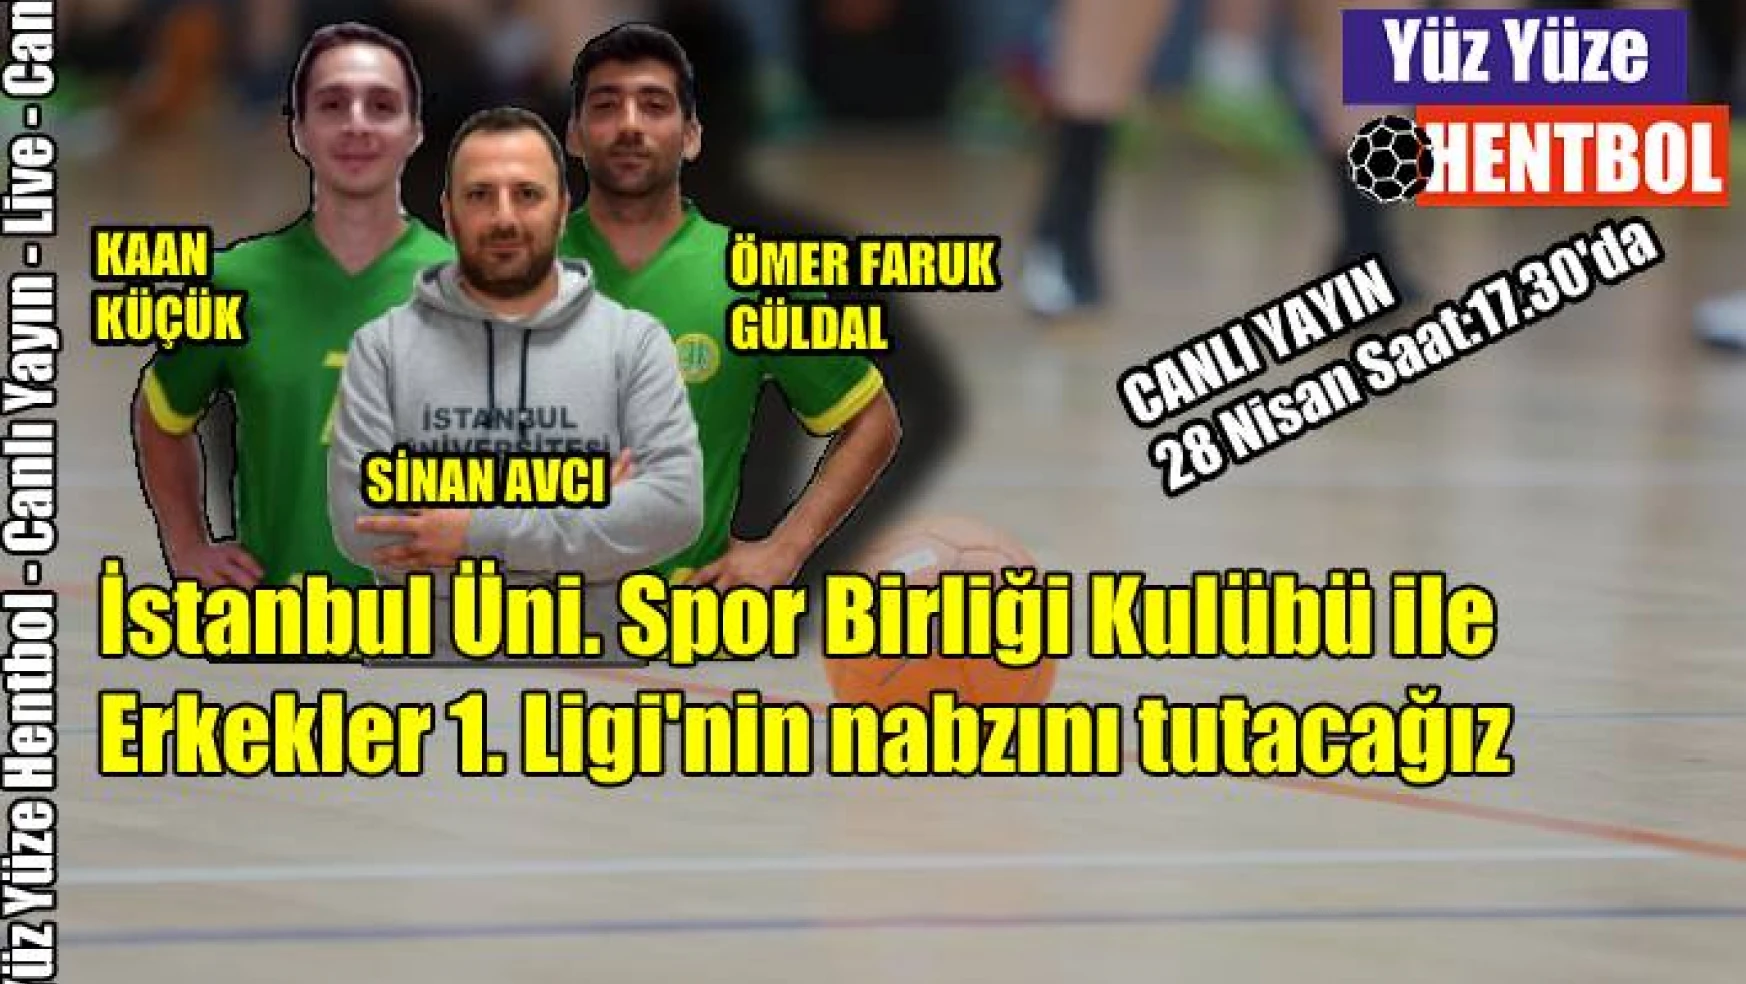 Yüz Yüze Hentbol’da İstanbul Üni. Spor Birliği olacak